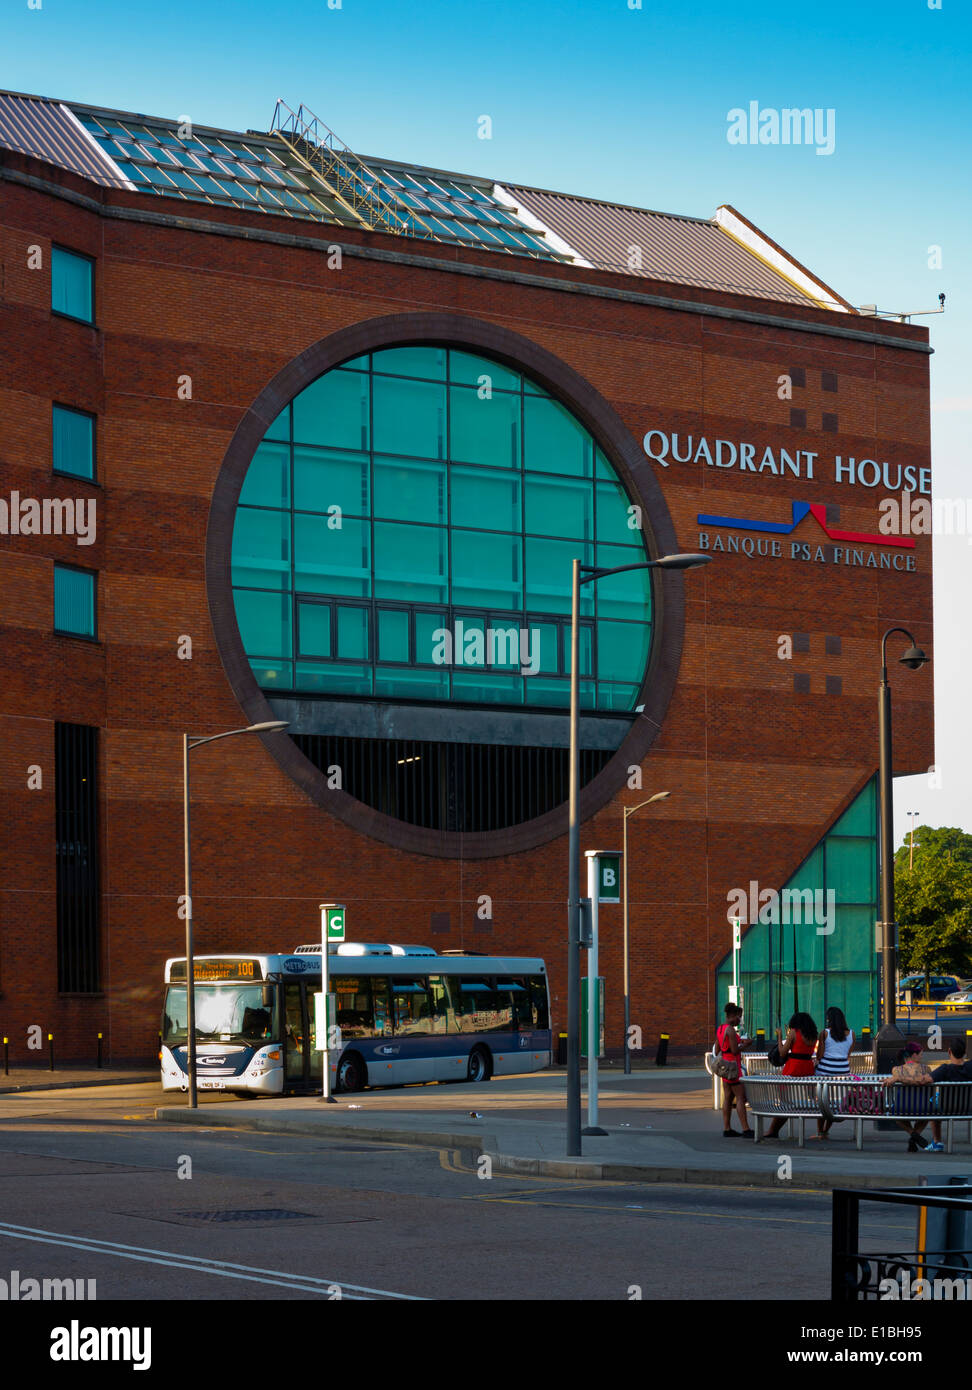 Quadrant House une brique rouge bloc de bureau moderne dans le centre de Chertsey Surrey England UK avec arrêt de bus en face Banque D'Images